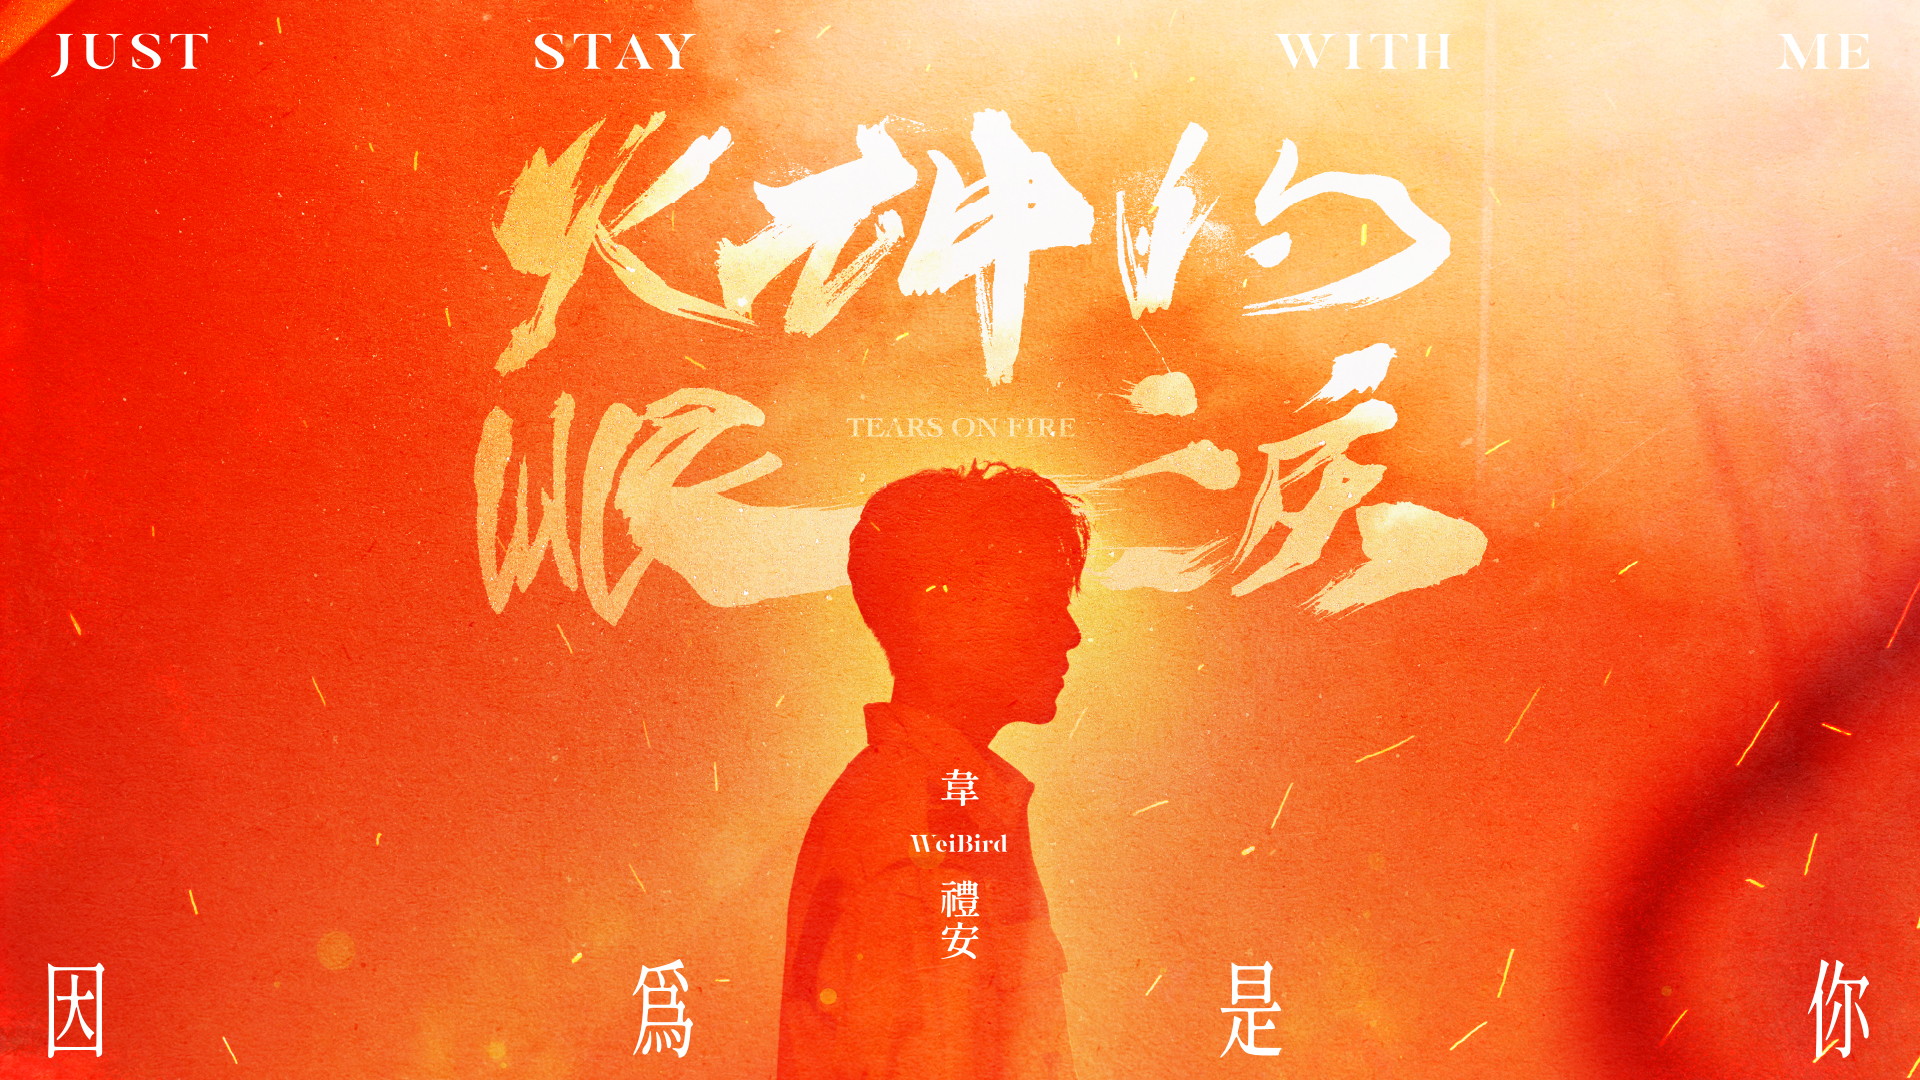 《因為是你Just Stay with Me》Official Music Video - 原創影集《火神的眼淚》片頭曲